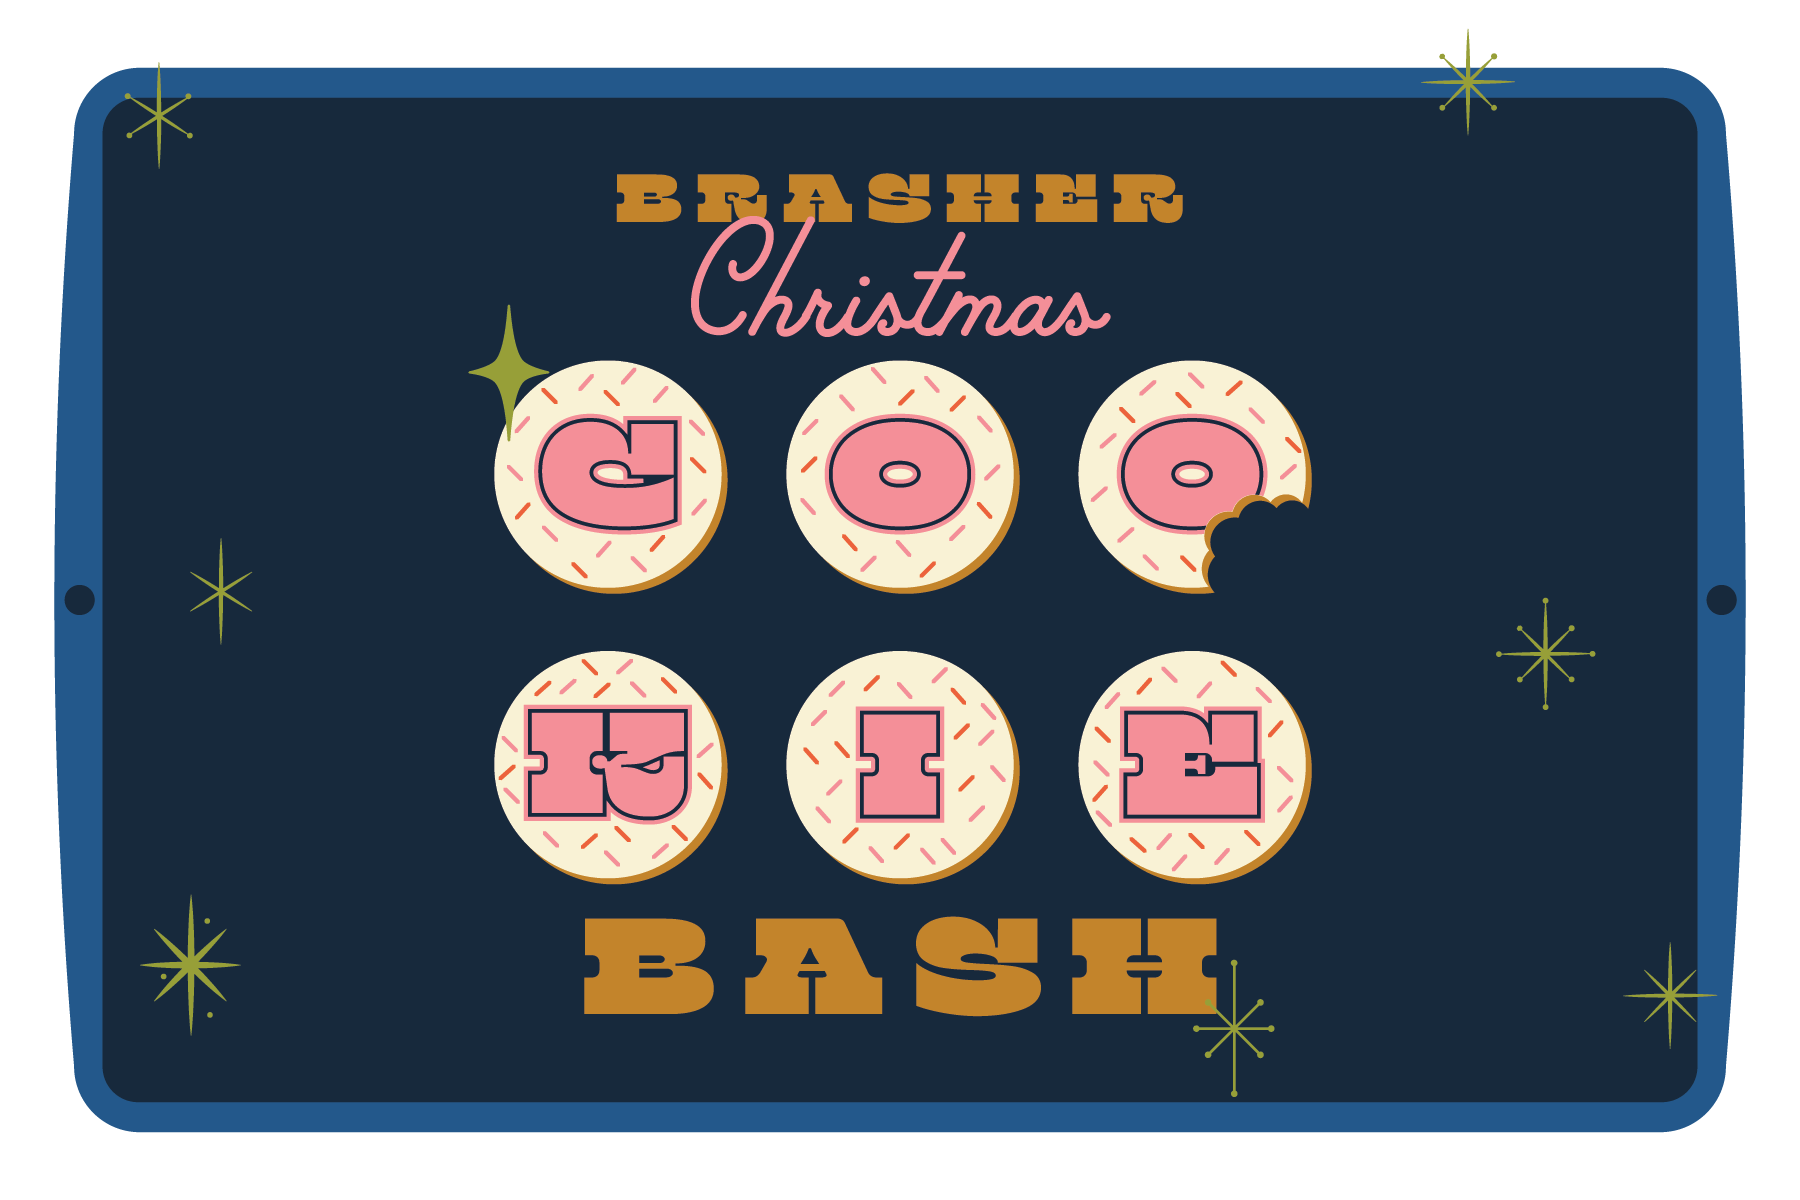 Brasher-Christmas-Cookie-Bash-02